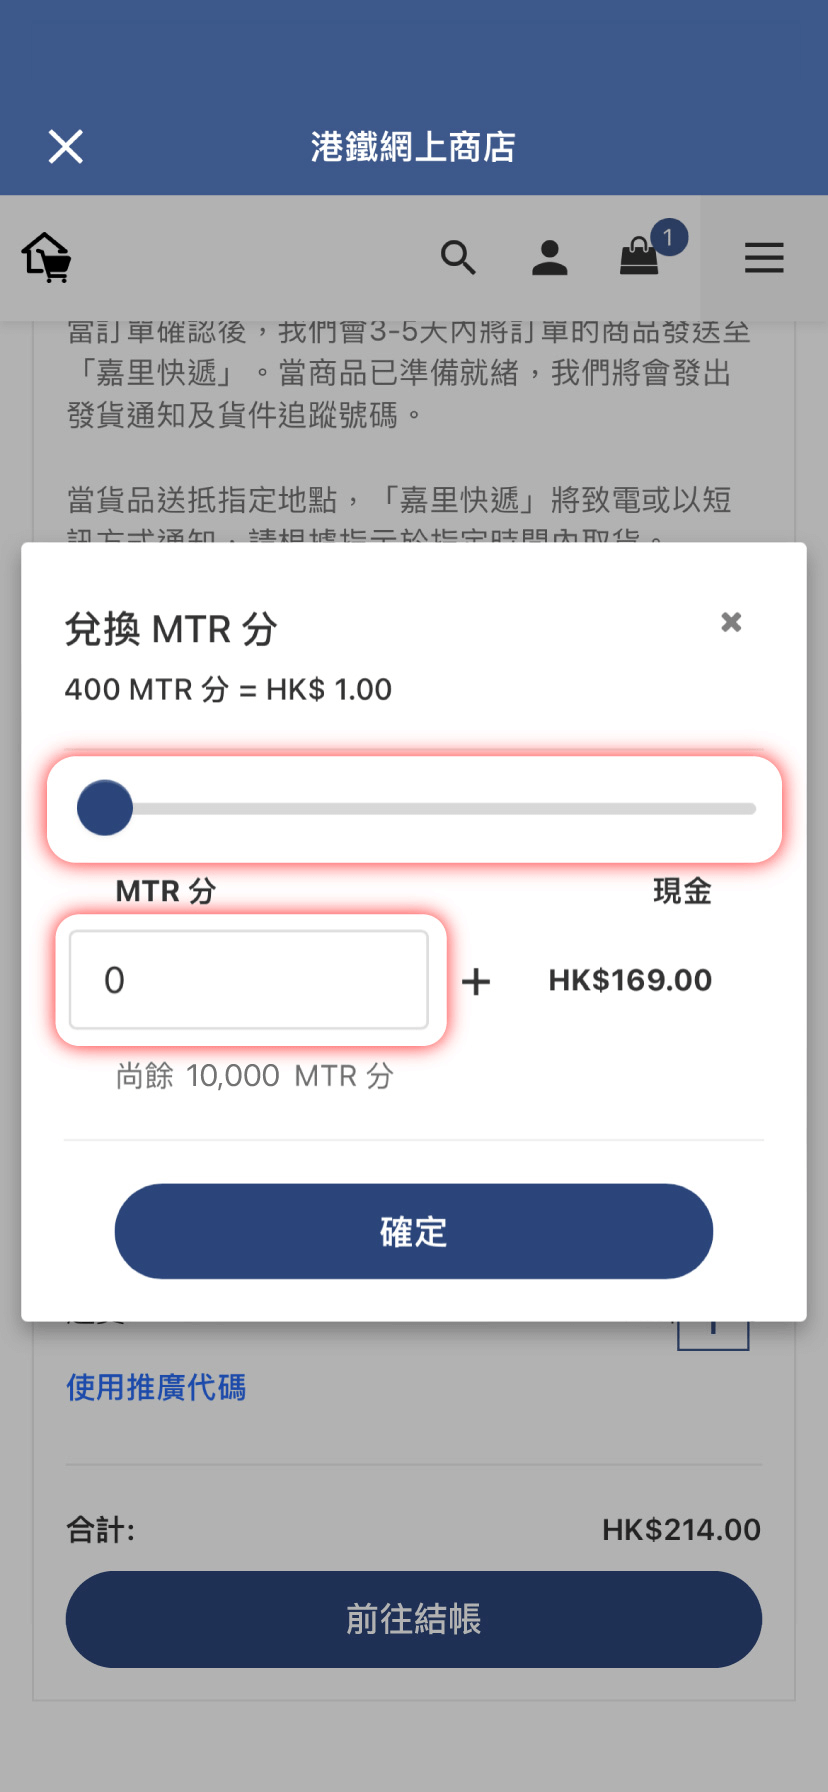 滑動或輸入兌換的MTR 分數目後按「確定」，即完成兌換